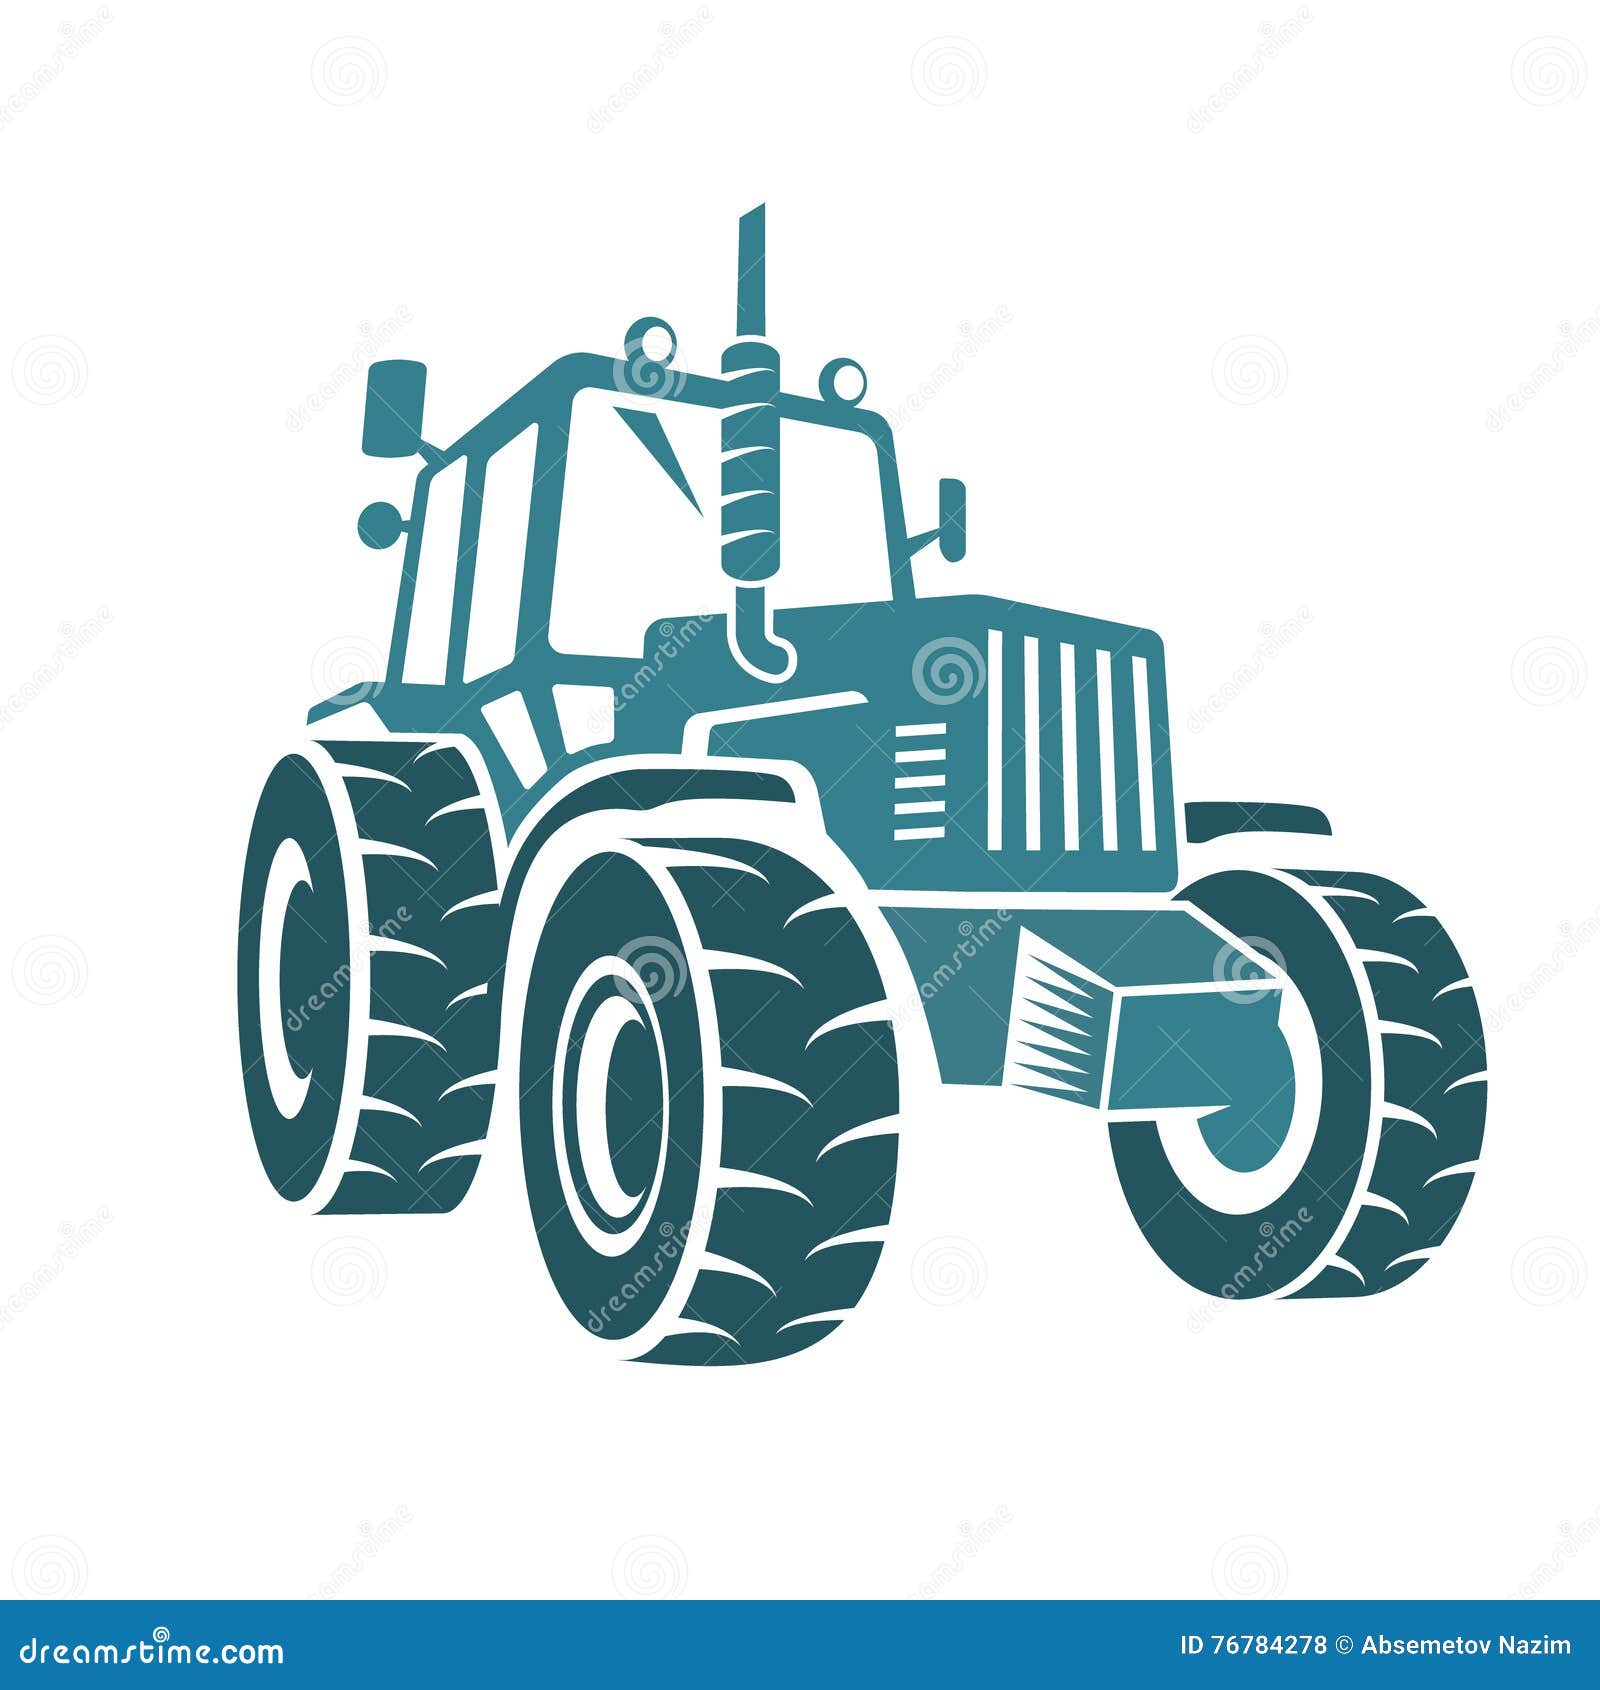 tractor farm emblem